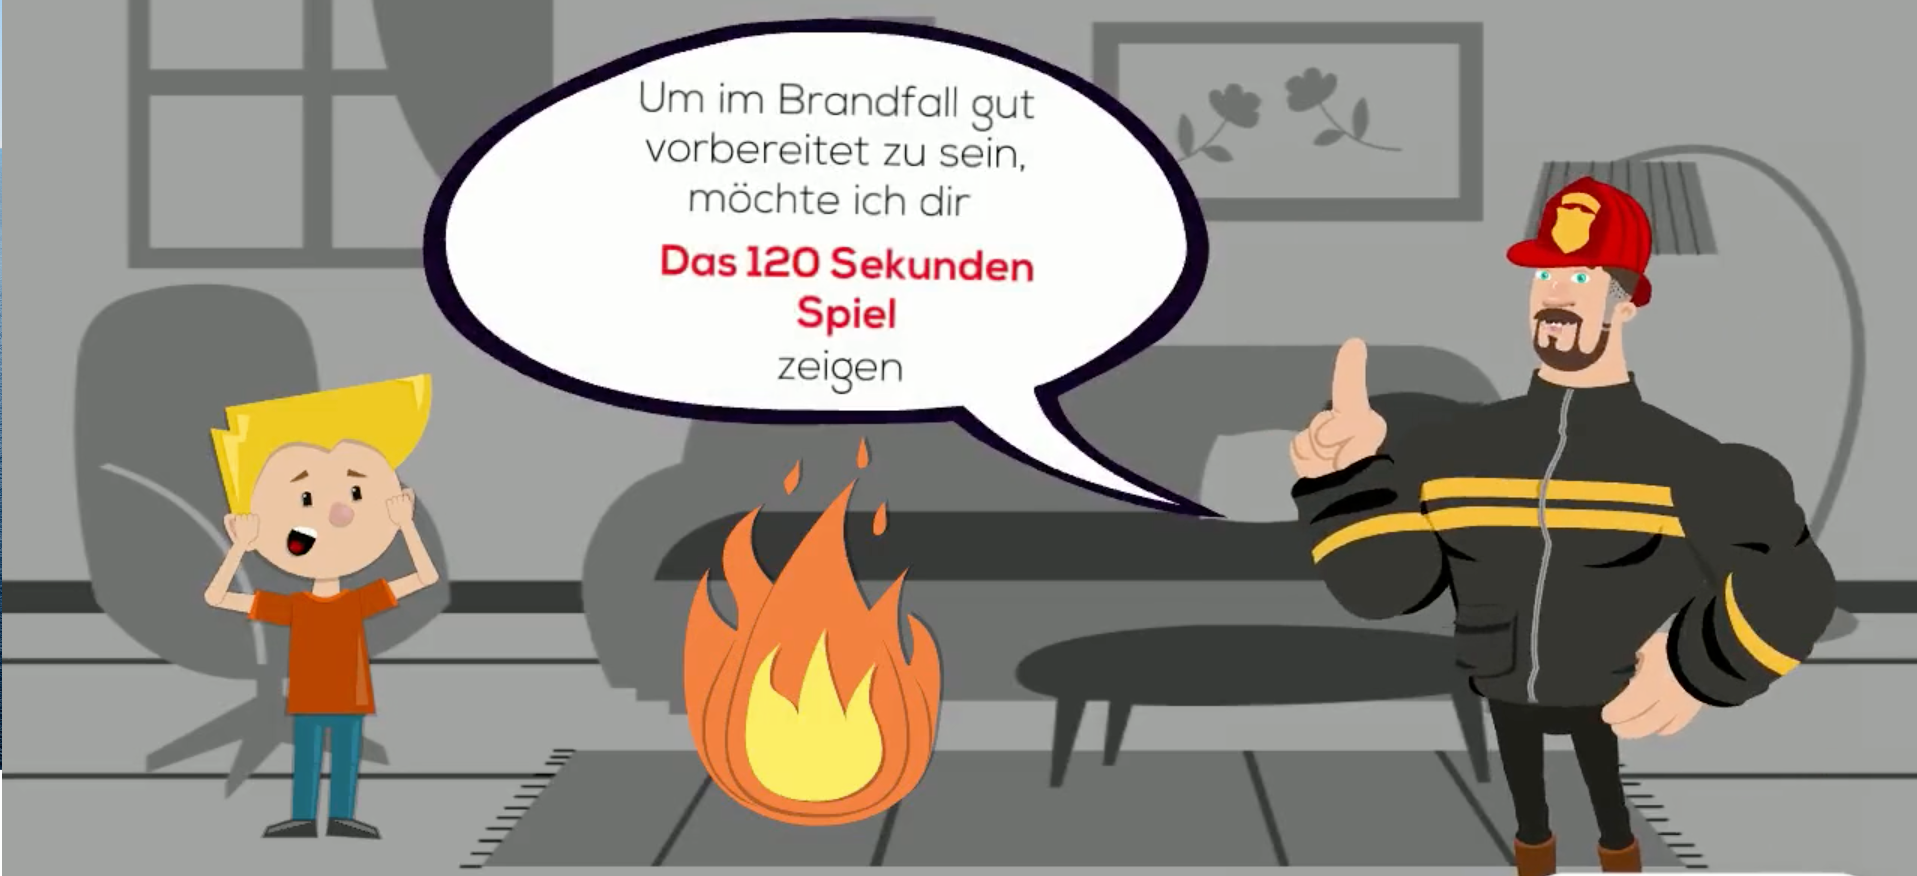 Interaktives Lernspiel für die Feuerwehrerlebniswelt Bayern